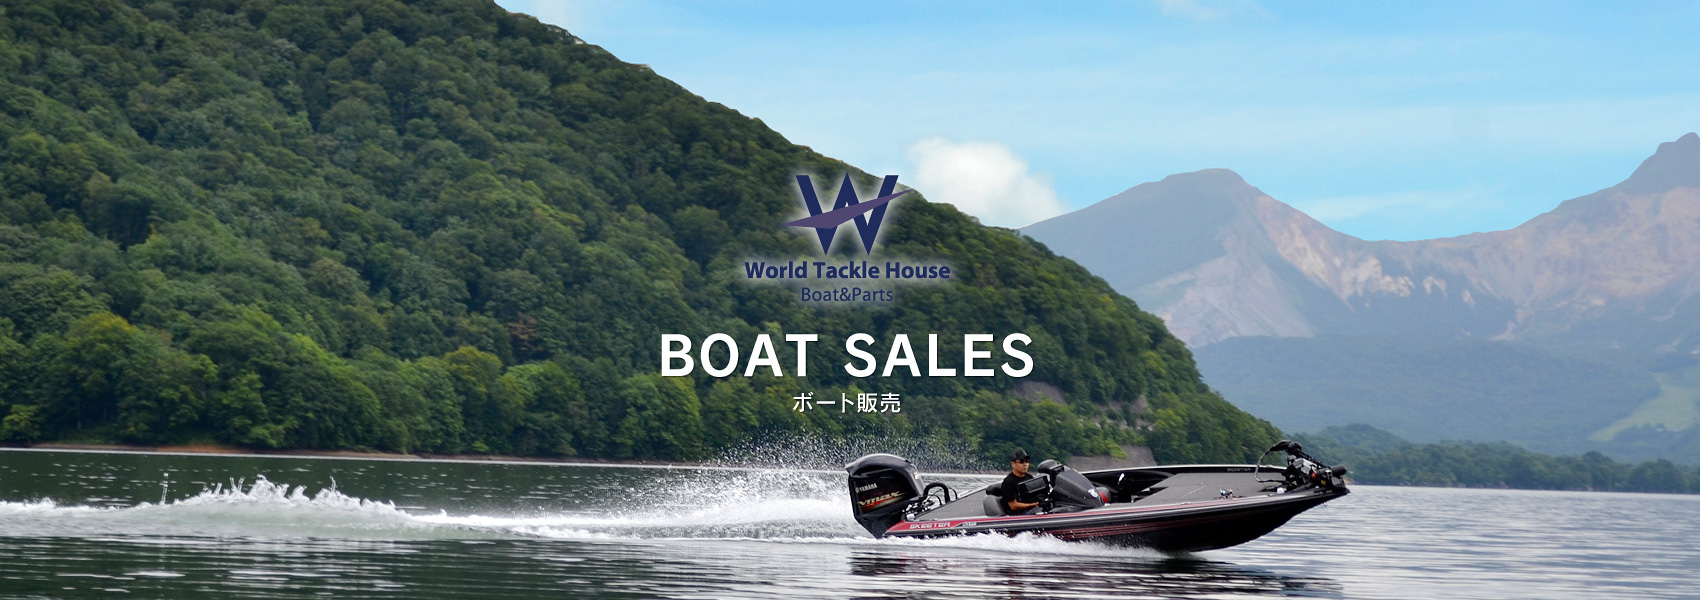 ボート販売 | ワールドタックルハウス | 中古ボート、新艇、ボート 